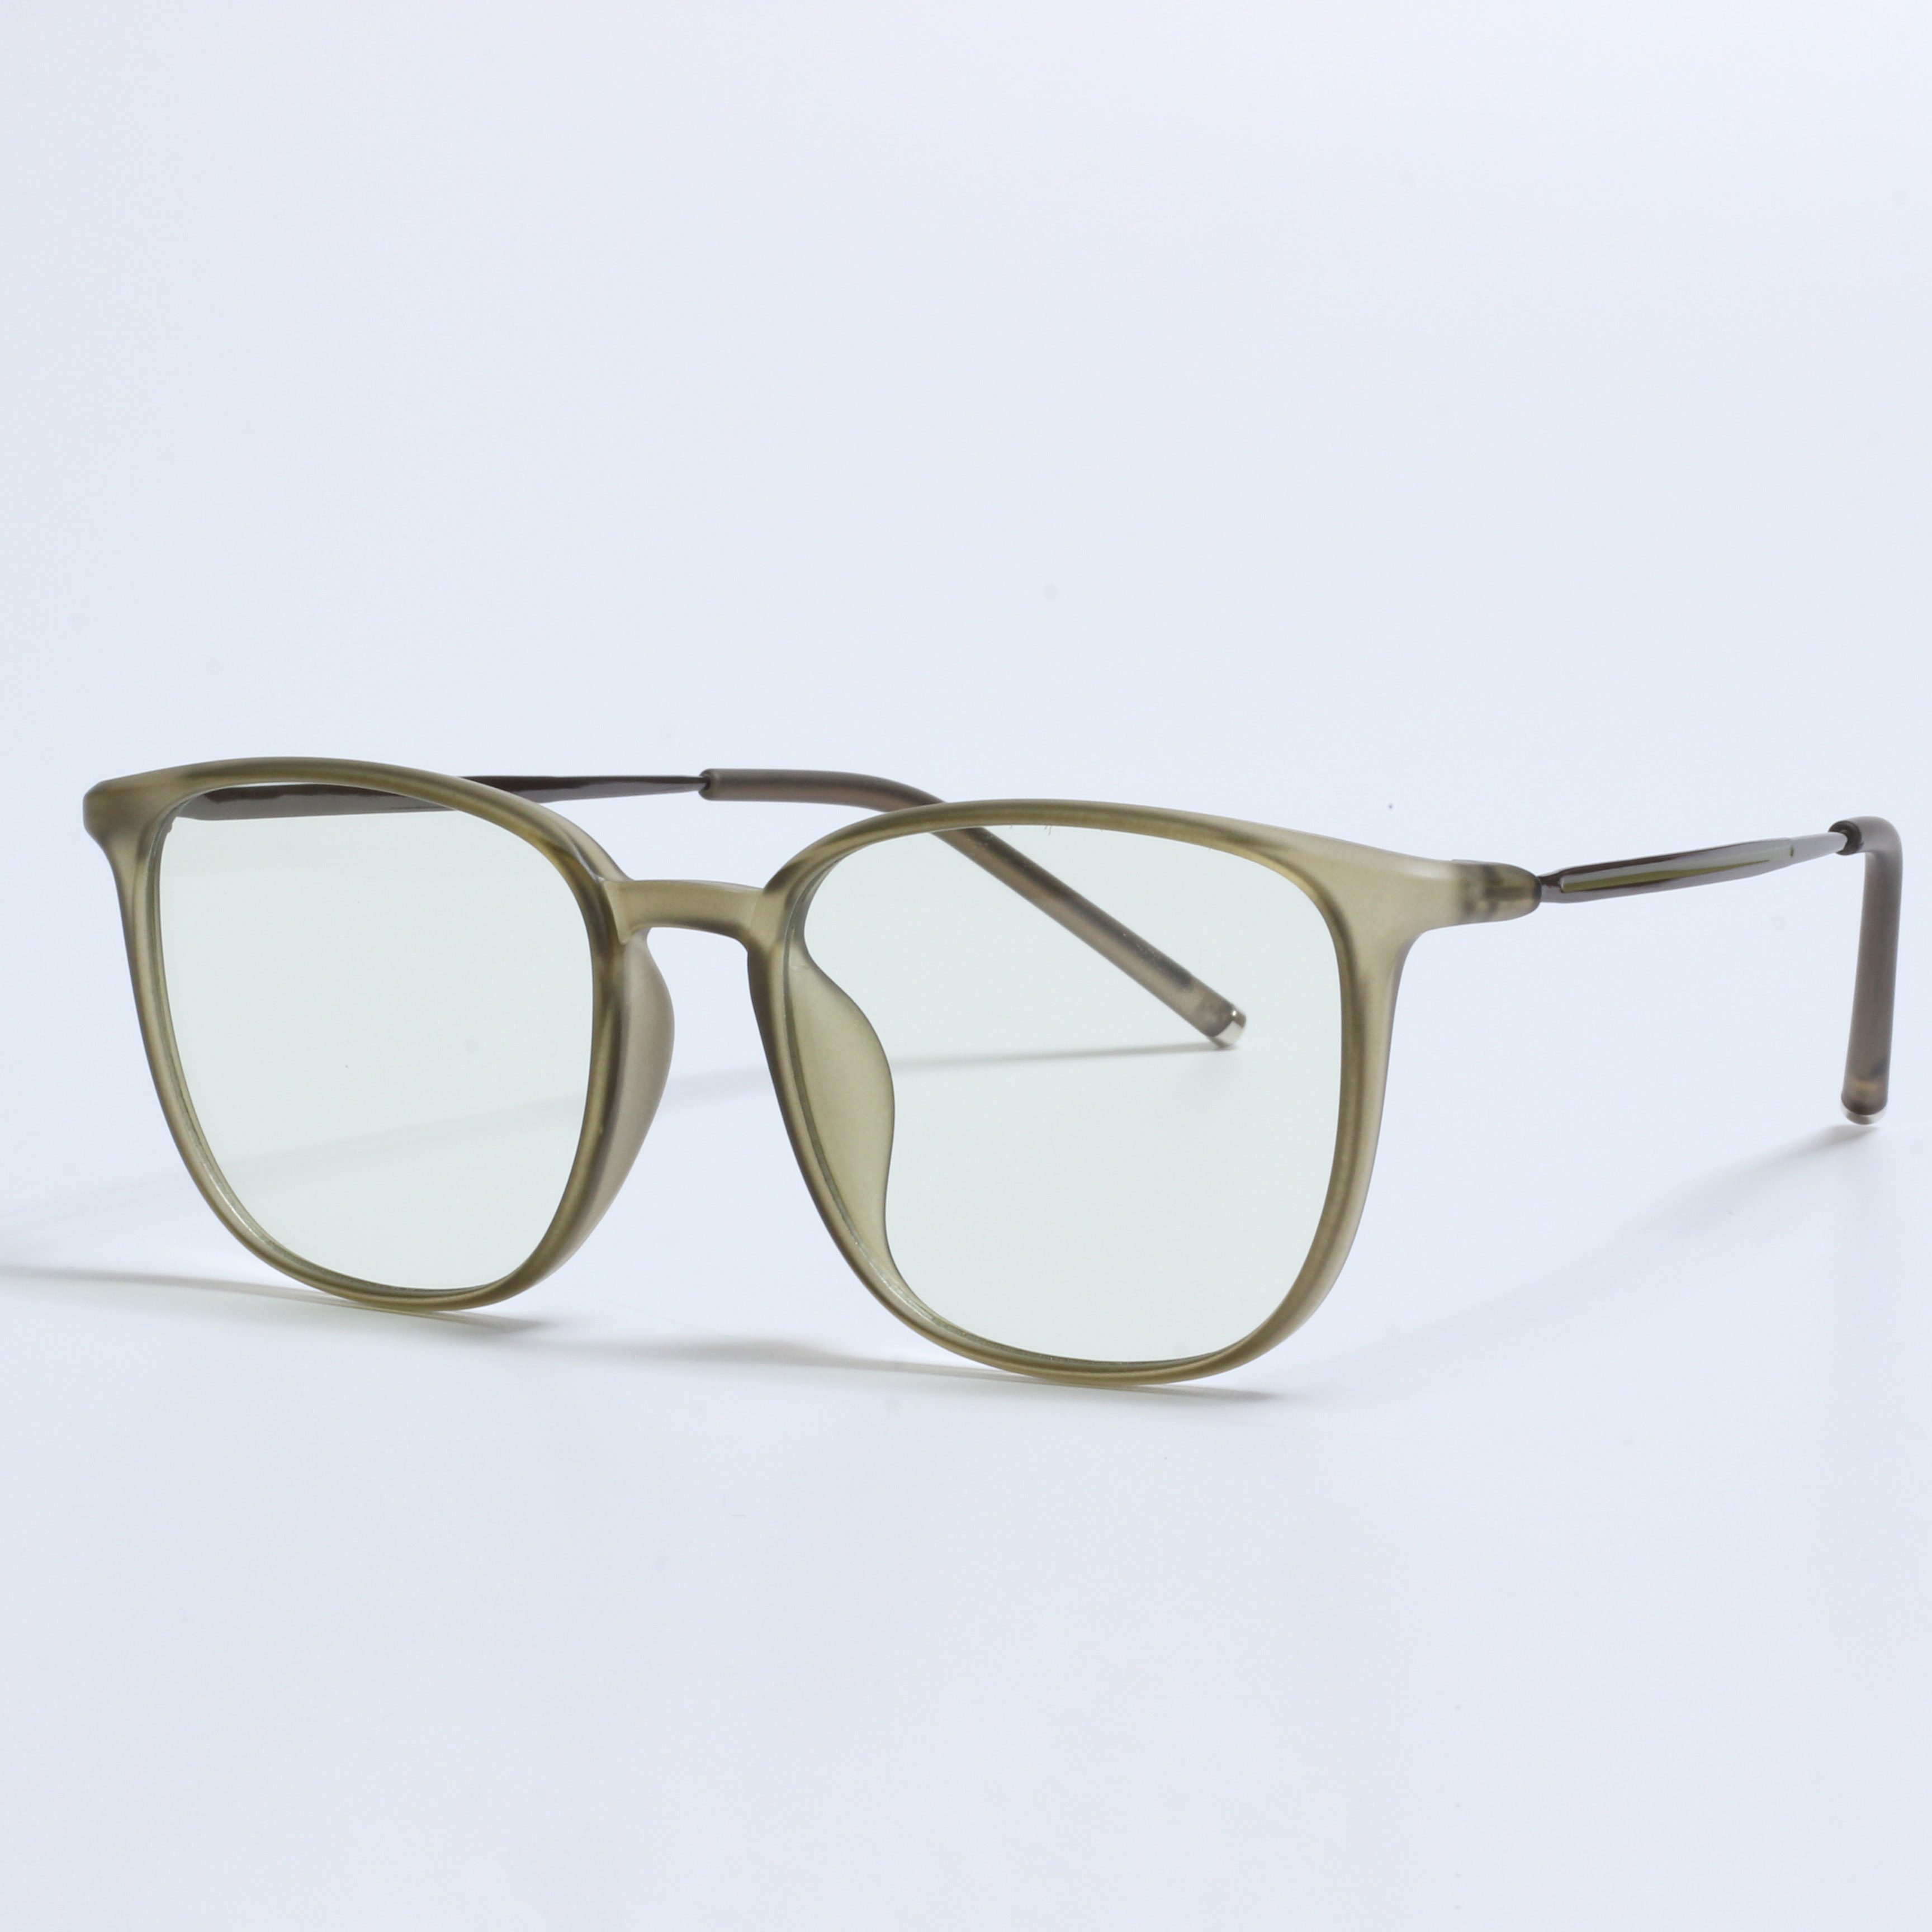 Nieuwe retro lunette antilumiere designer brillen op sterkte (5)